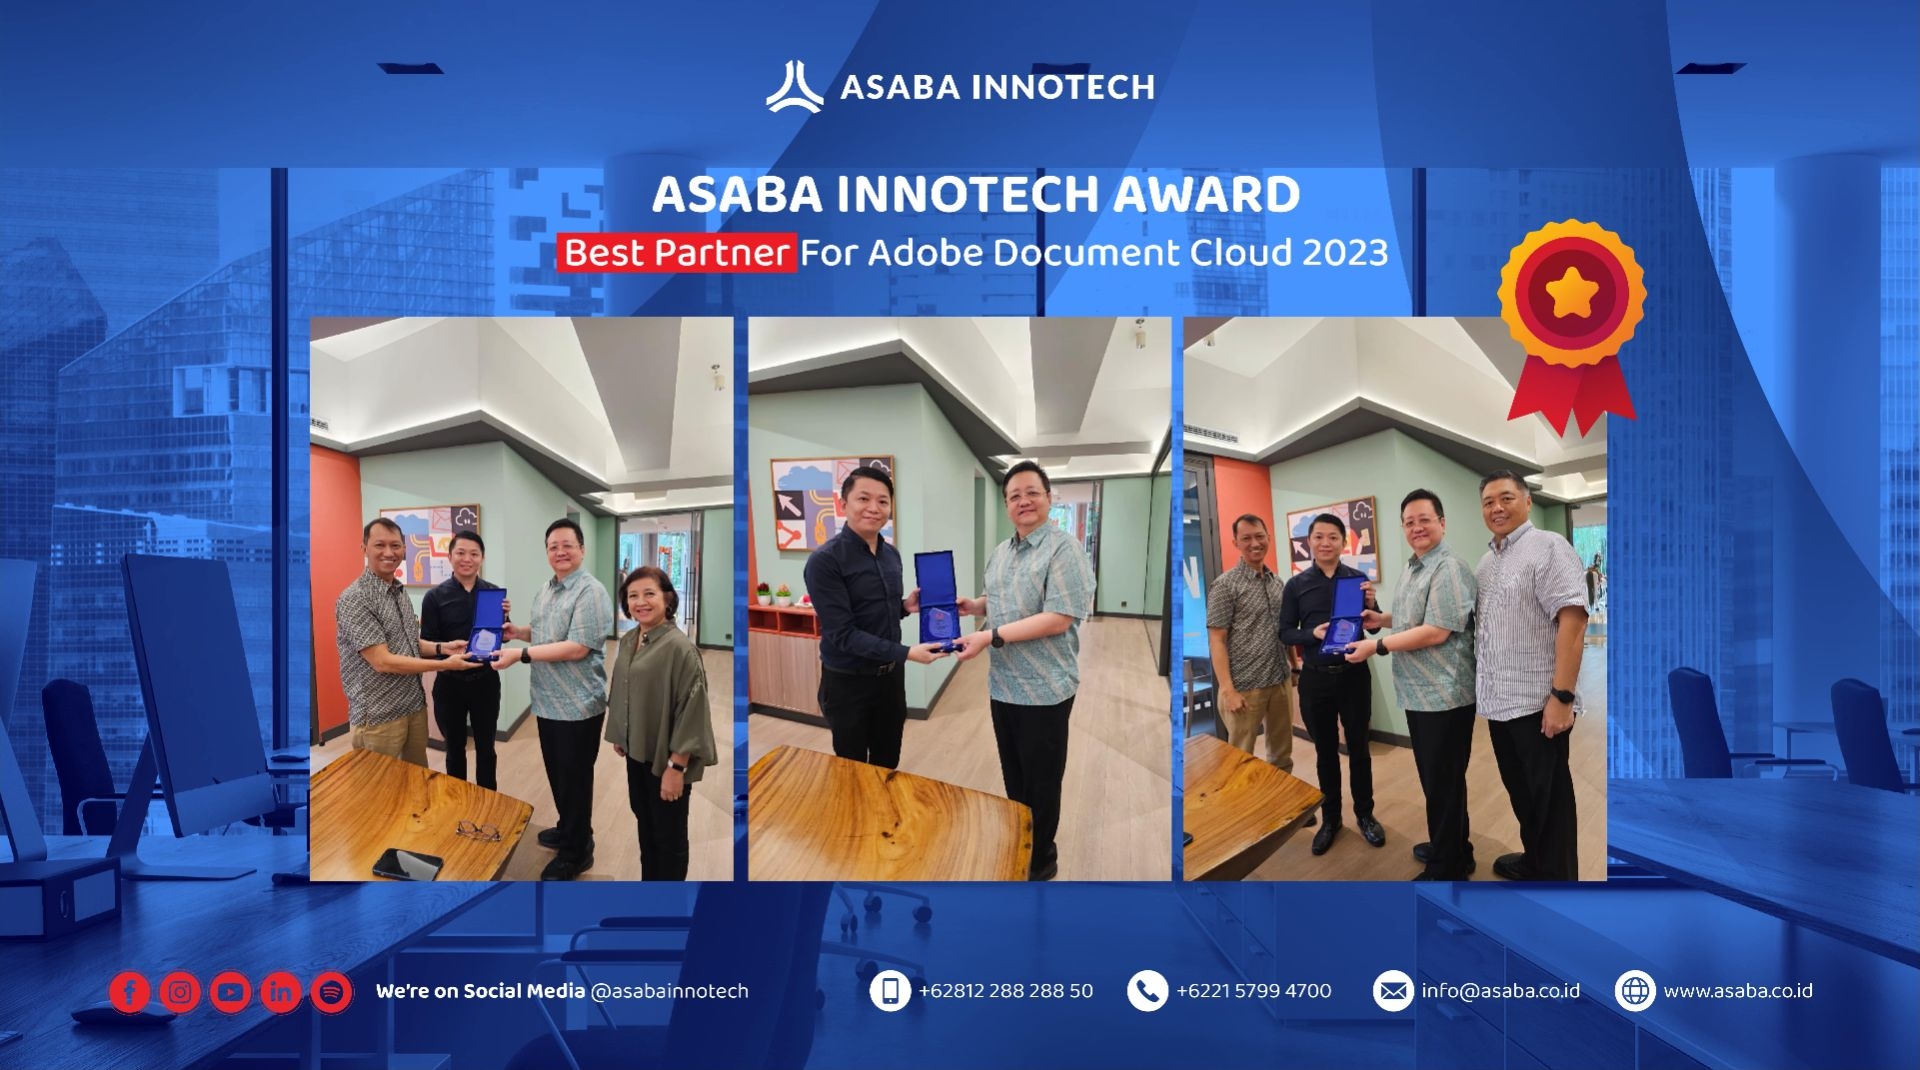 ASABA INNOTECH AWARD : Best Partner For Adobe Document Cloud 2023